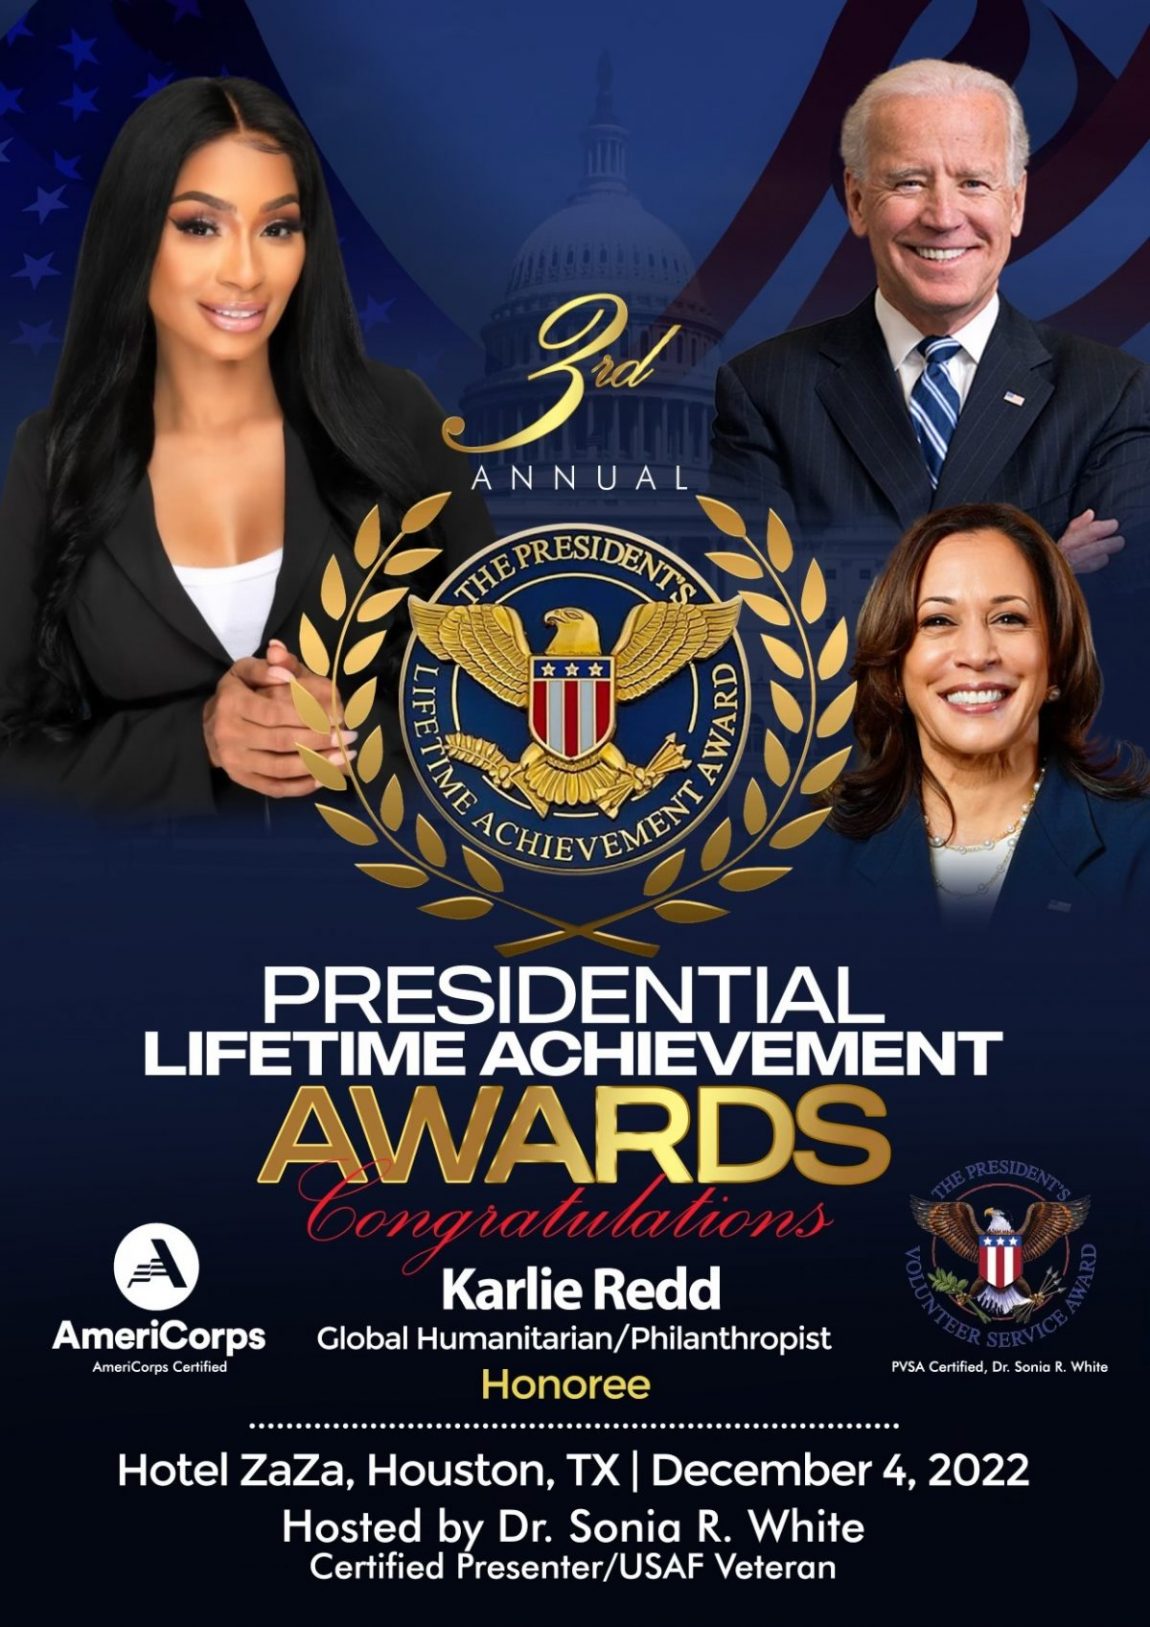 Karlie Redd Receives Lifetime Achievement Award